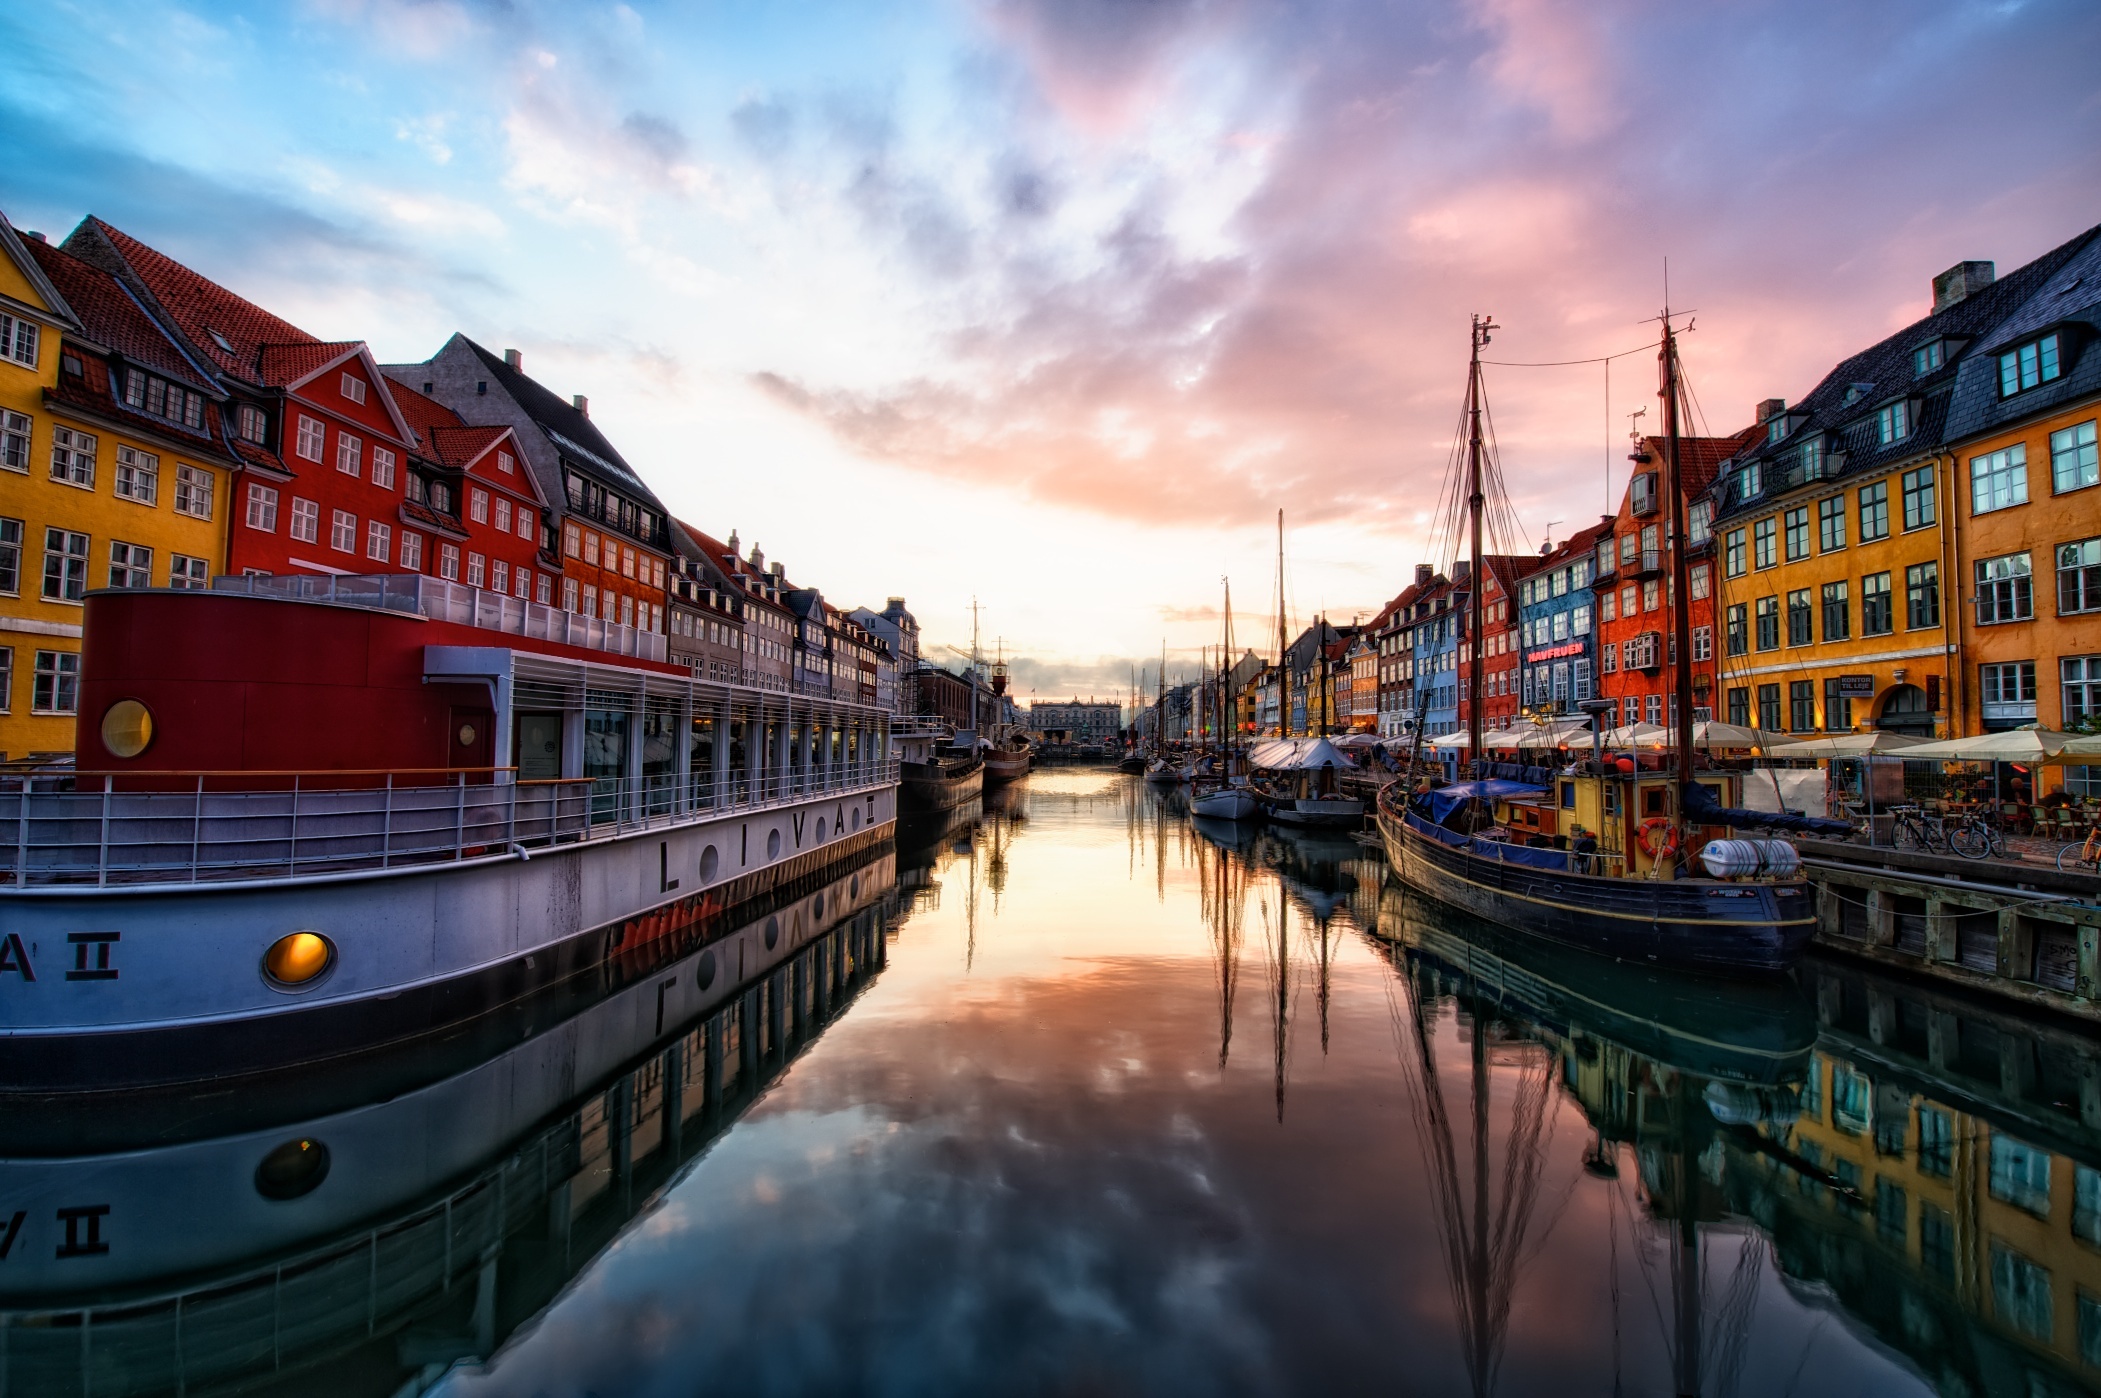 Nyhavn's sunset beauty, Danish desktop wallpapers, Scandinavian aesthetic, Inspiring decor, 2110x1400 HD Desktop